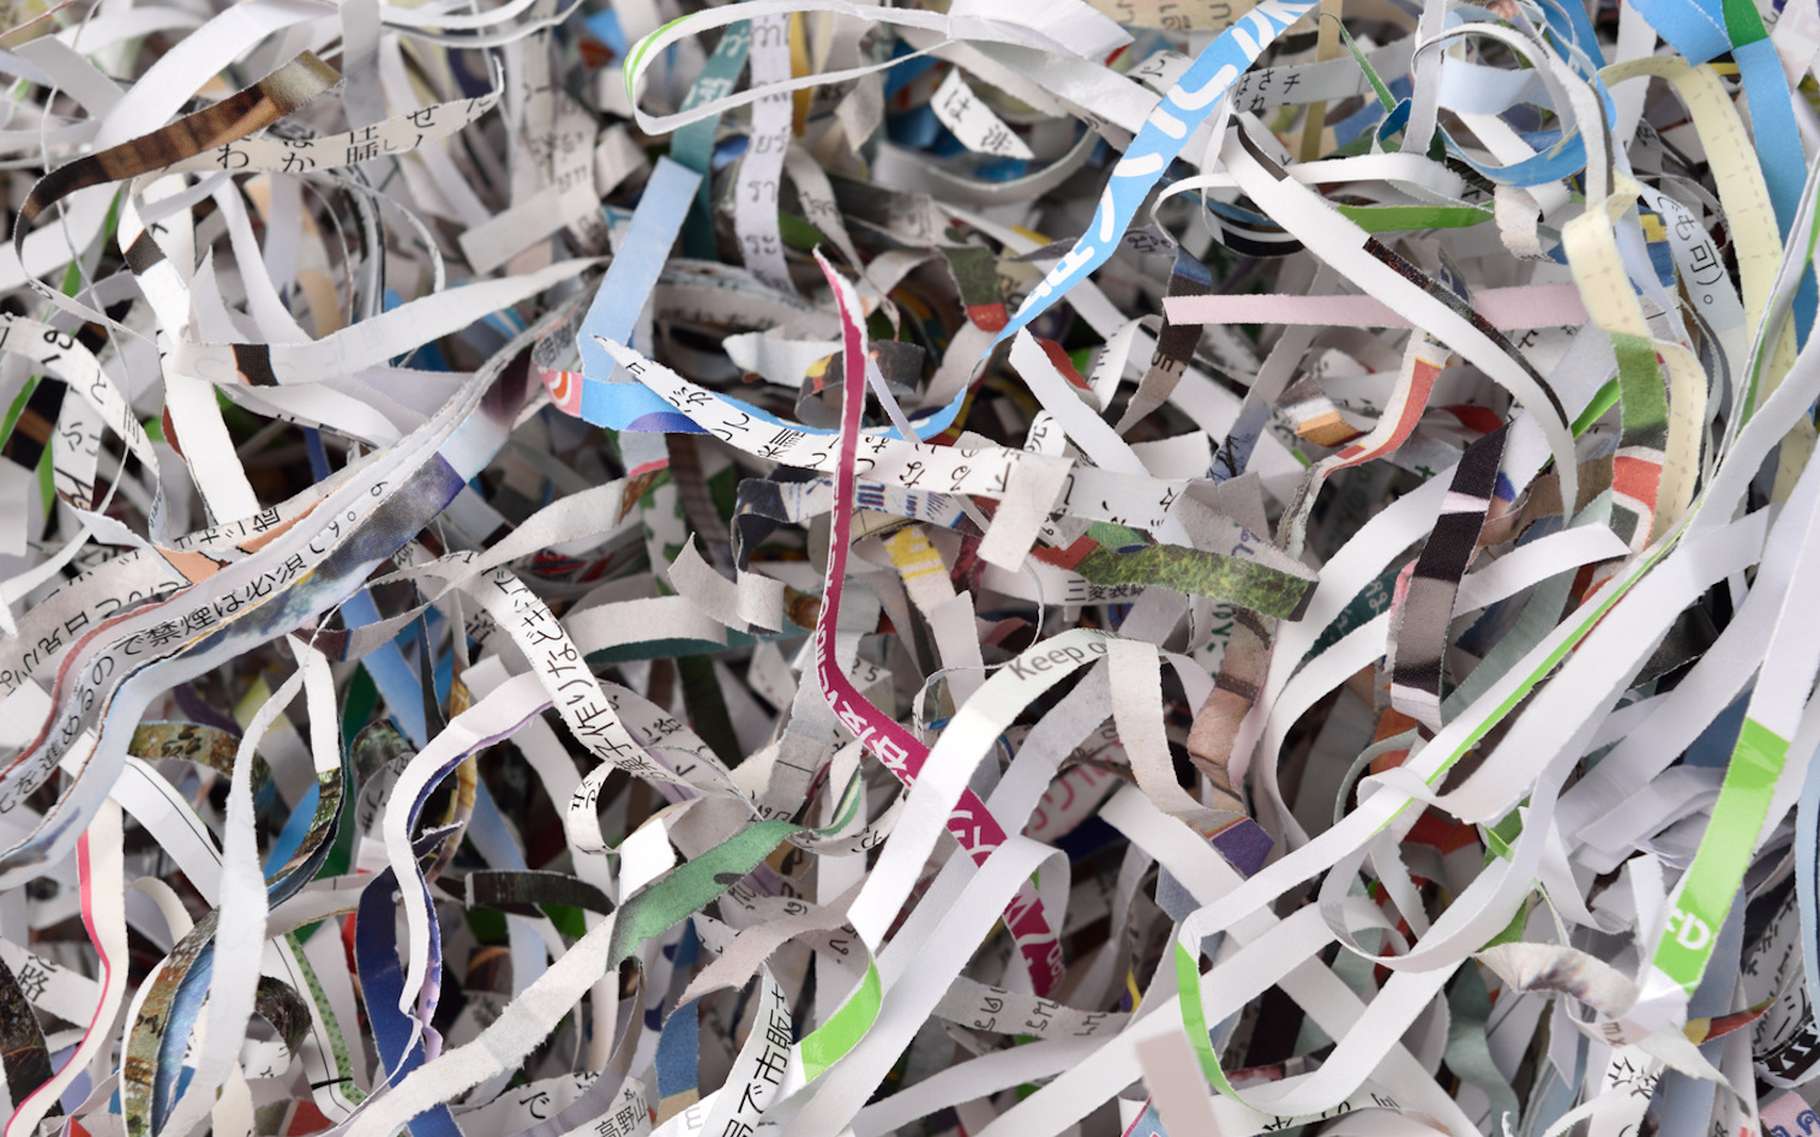 Les papiers constituent une part des déchets industriels banals. © mnirat, Fotolia